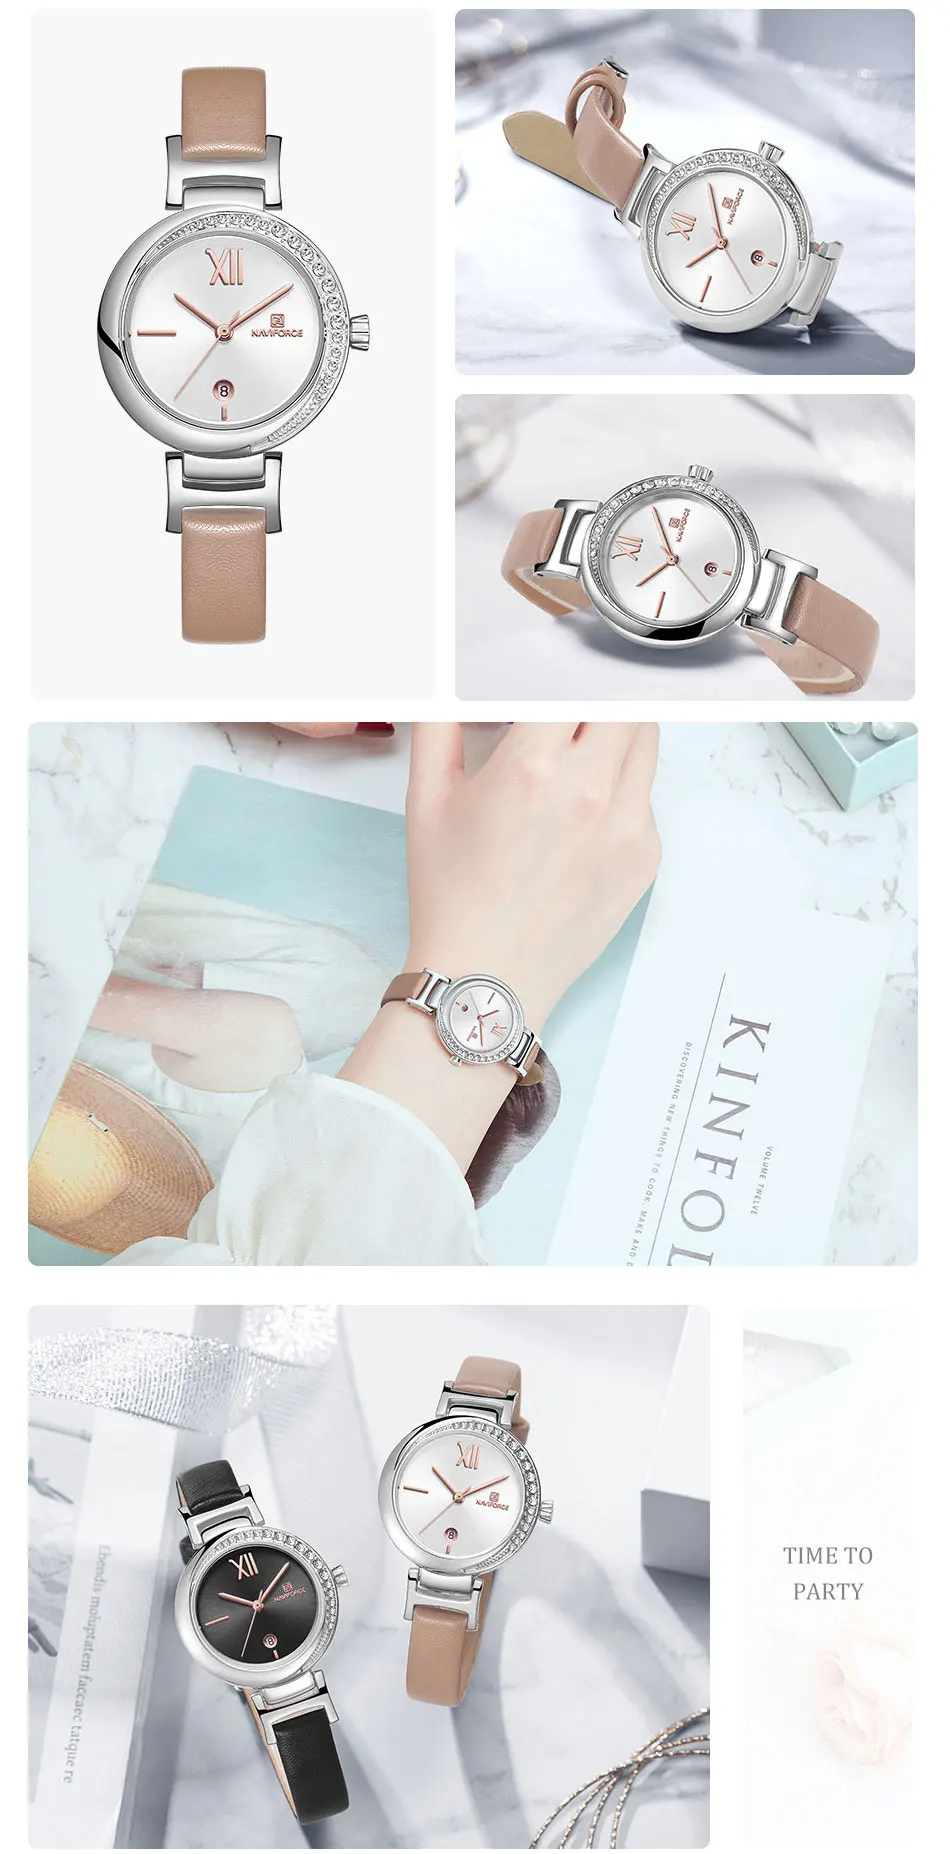 NAVIFORCE Топ бренд женские часы цветок женские наручные часы из натуральной кожи ремешок браслет женские часы Новые Relogio Feminino